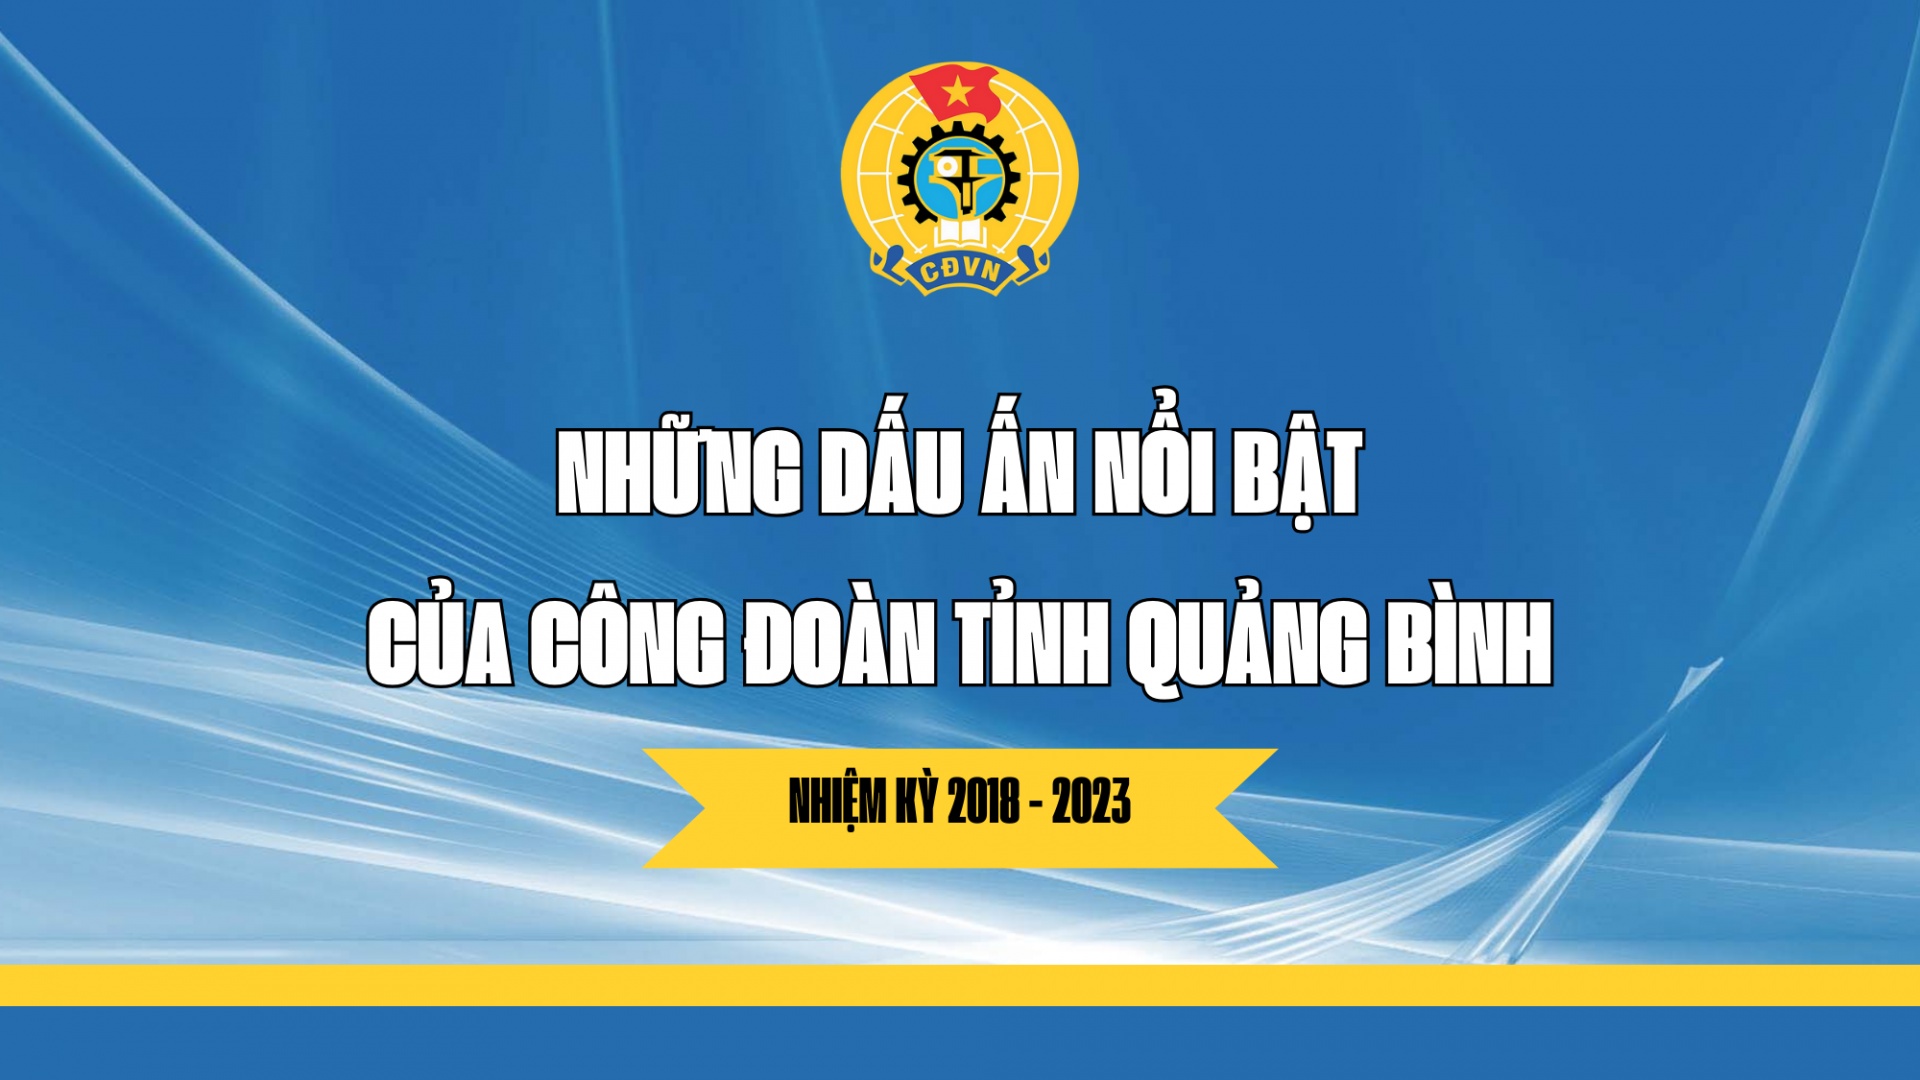 Những dấu ấn nổi bật của Công đoàn tỉnh Quảng Bình trong nhiệm kỳ 2018 - 2023